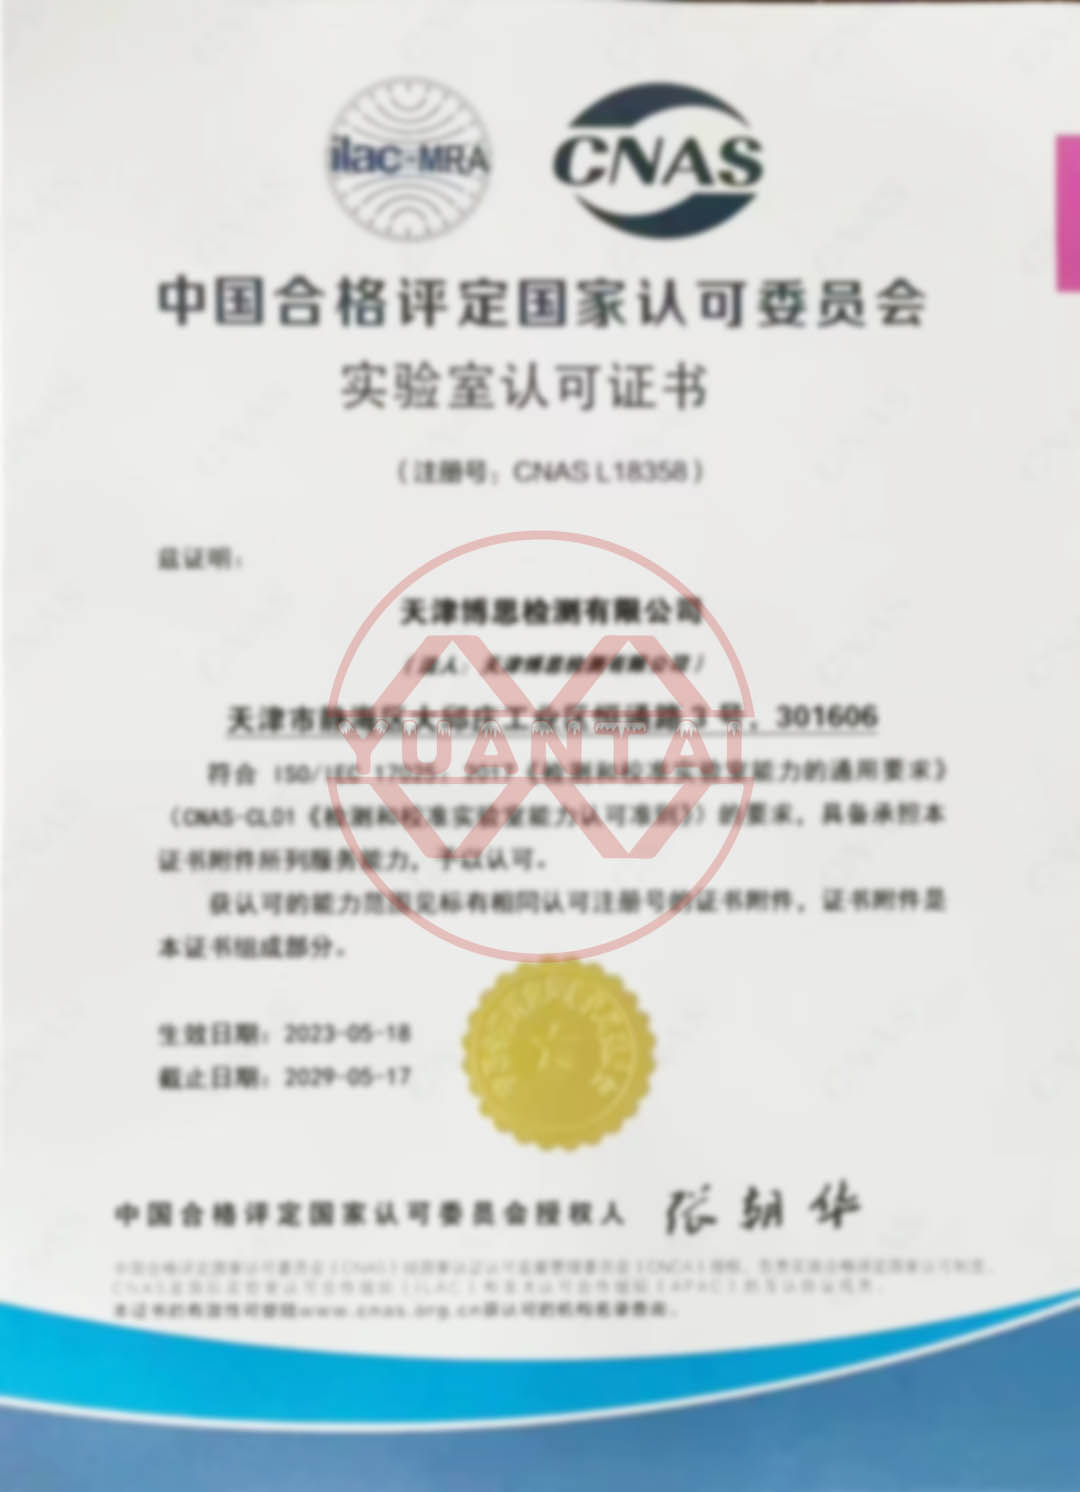 Tianjin Bosi Testing Co., Ltd.، Yuantai Derun Steel Pipe Group کے ذیلی ادارے کو CNAS سرٹیفیکیشن پاس کرنے پر مبارکباد۔